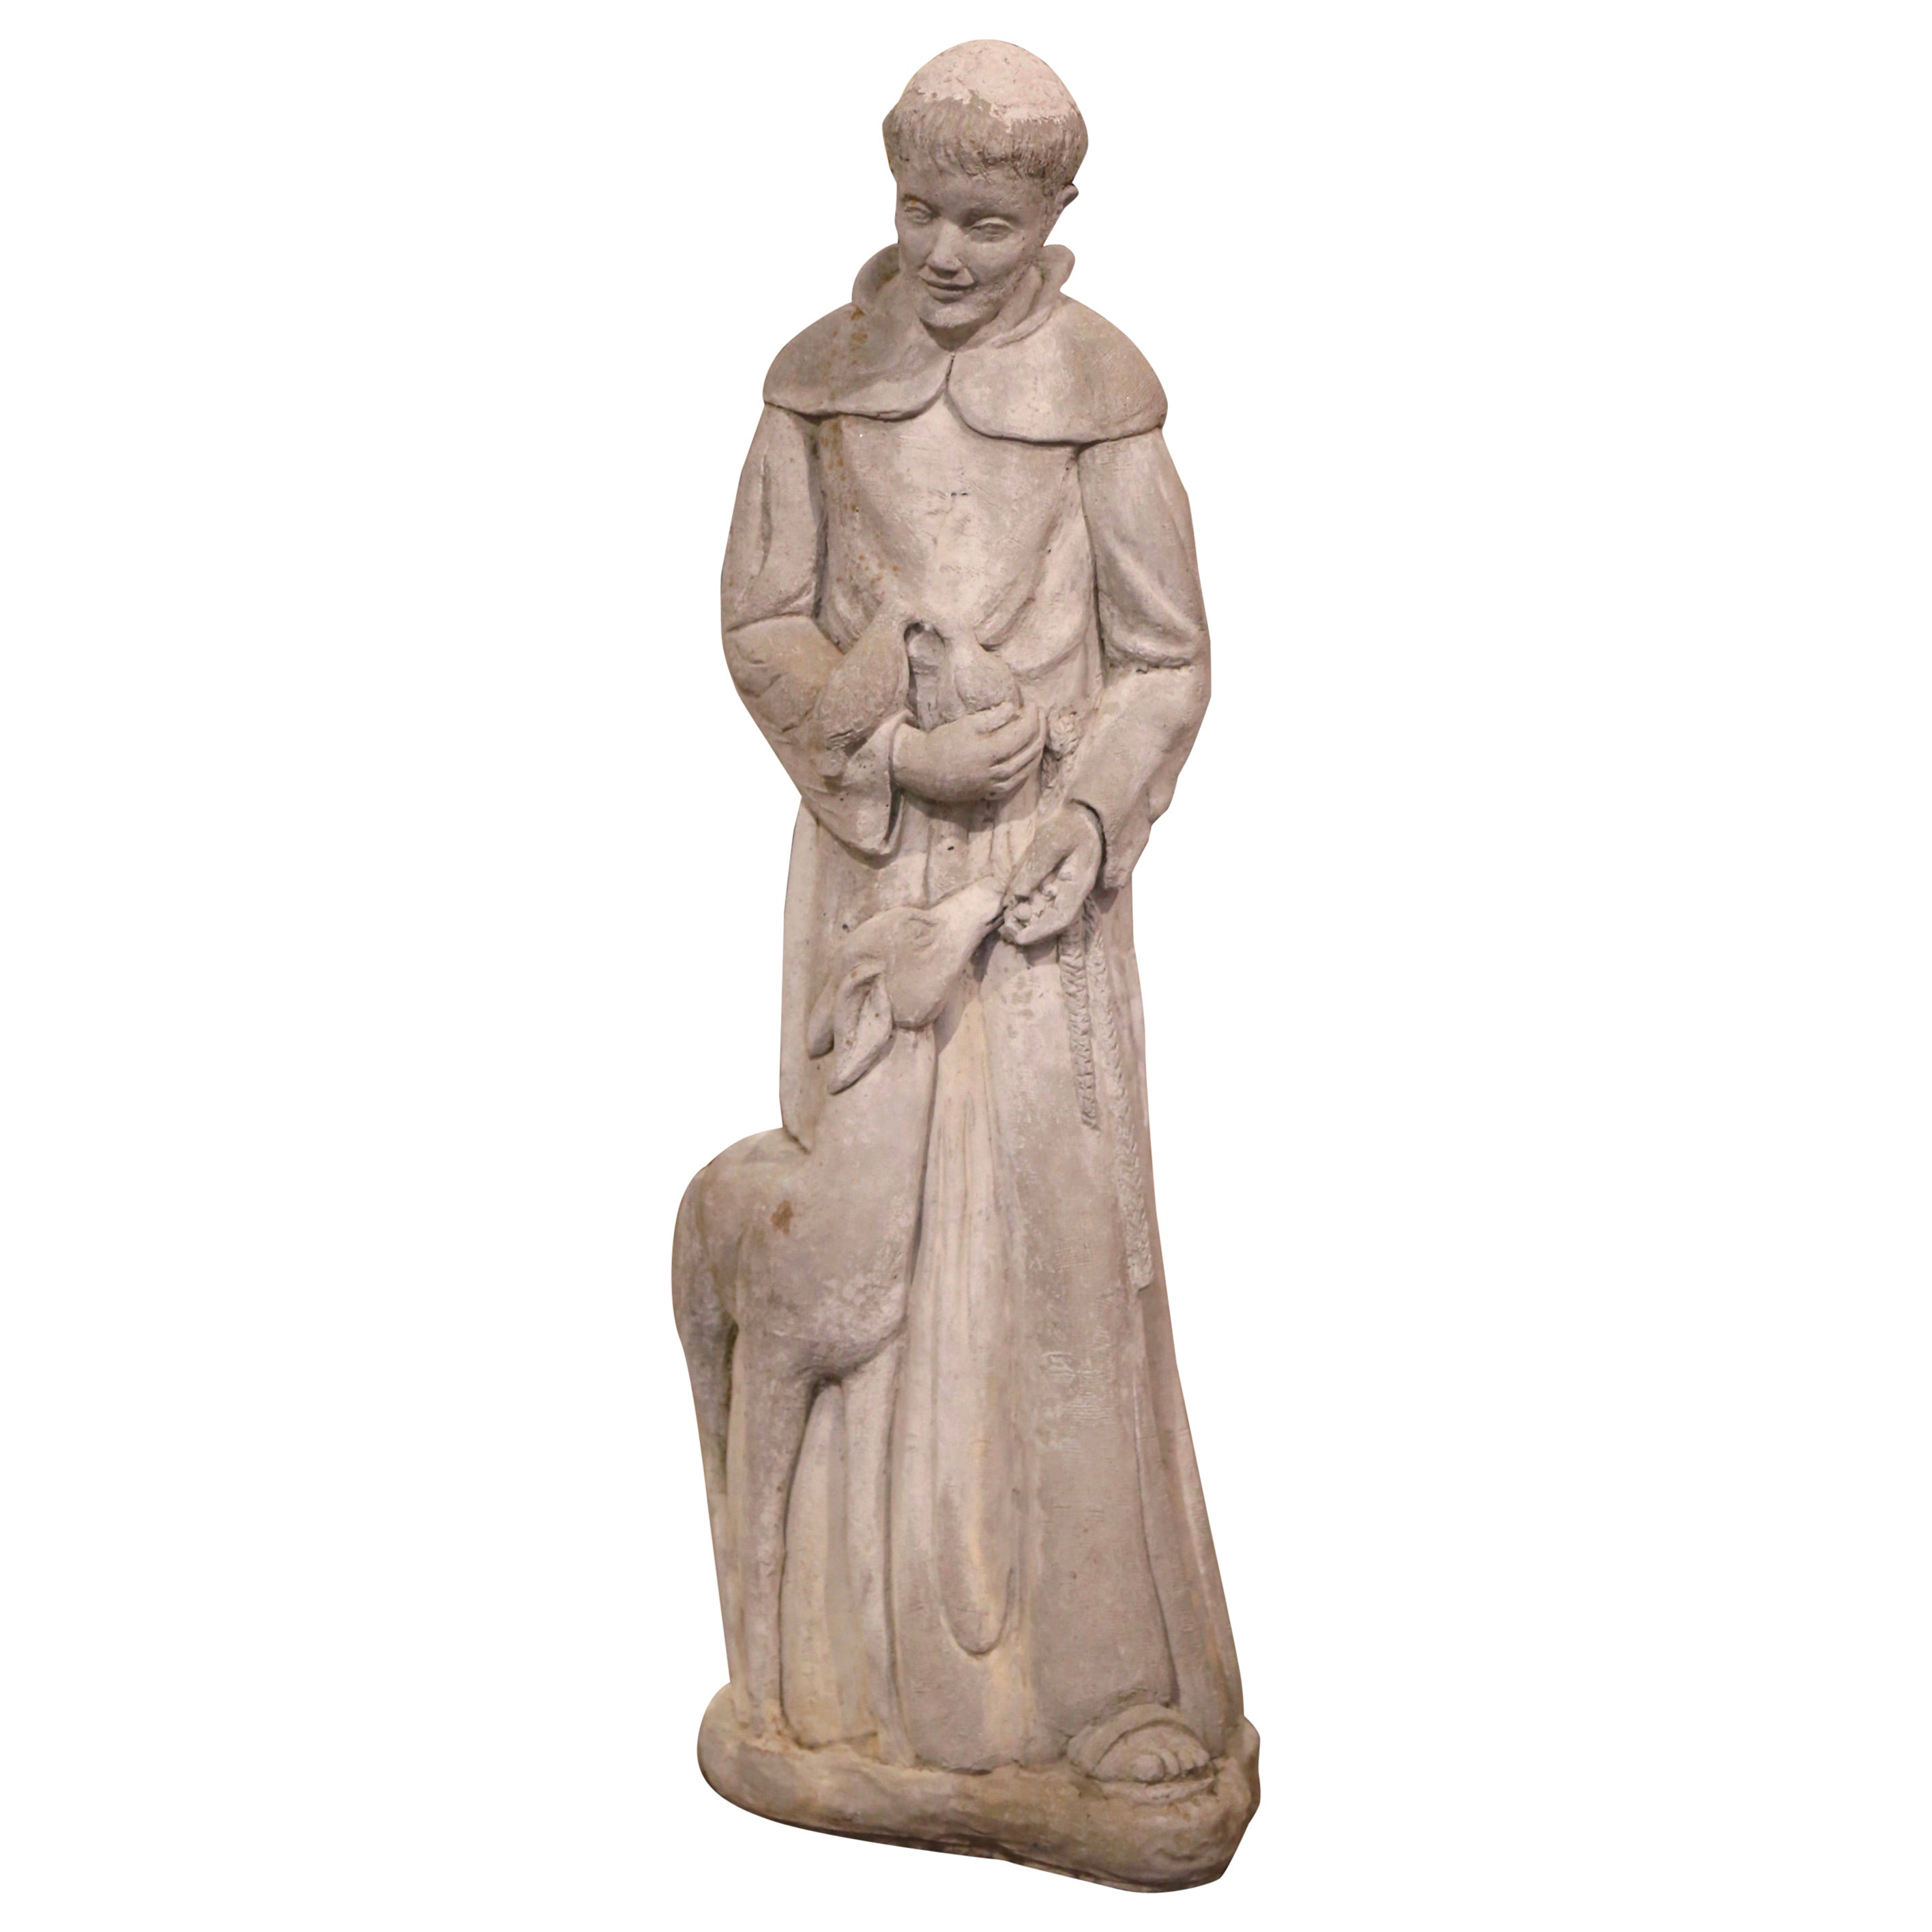 Verwitterte St. Francis-Statue aus verwittertem Beton mit Lamm und Vögeln, datiert 2001